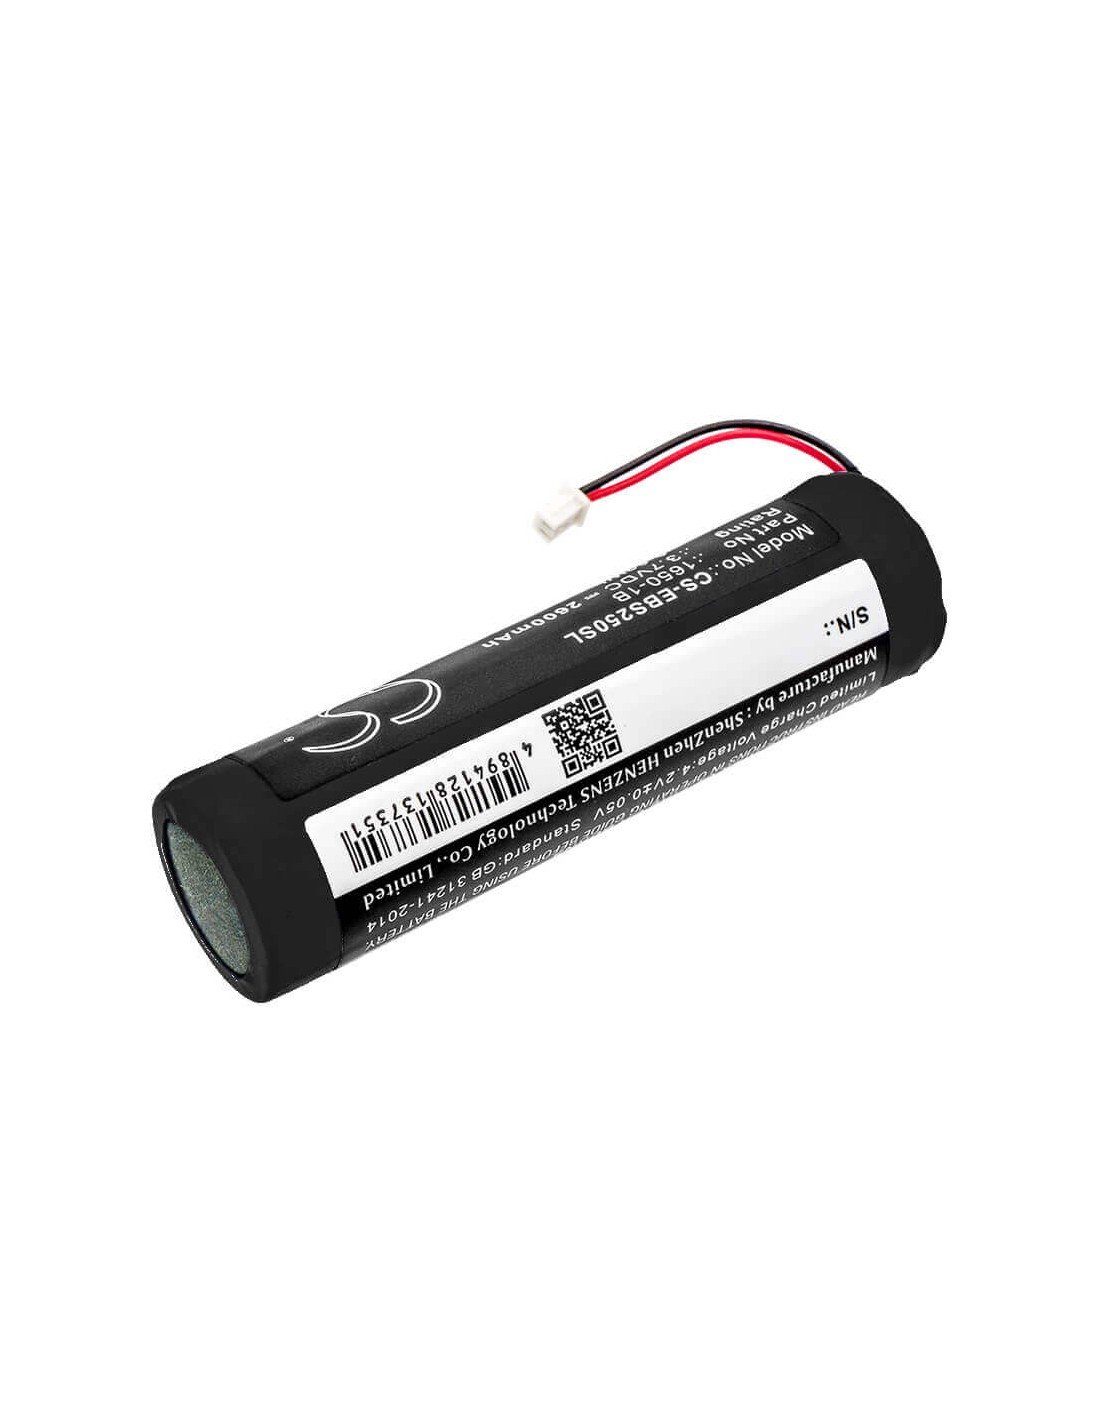 Battery for Eschenbach, Smartlux, Smartlux 2.5, 3.7V, 2600mAh - 9.62Wh